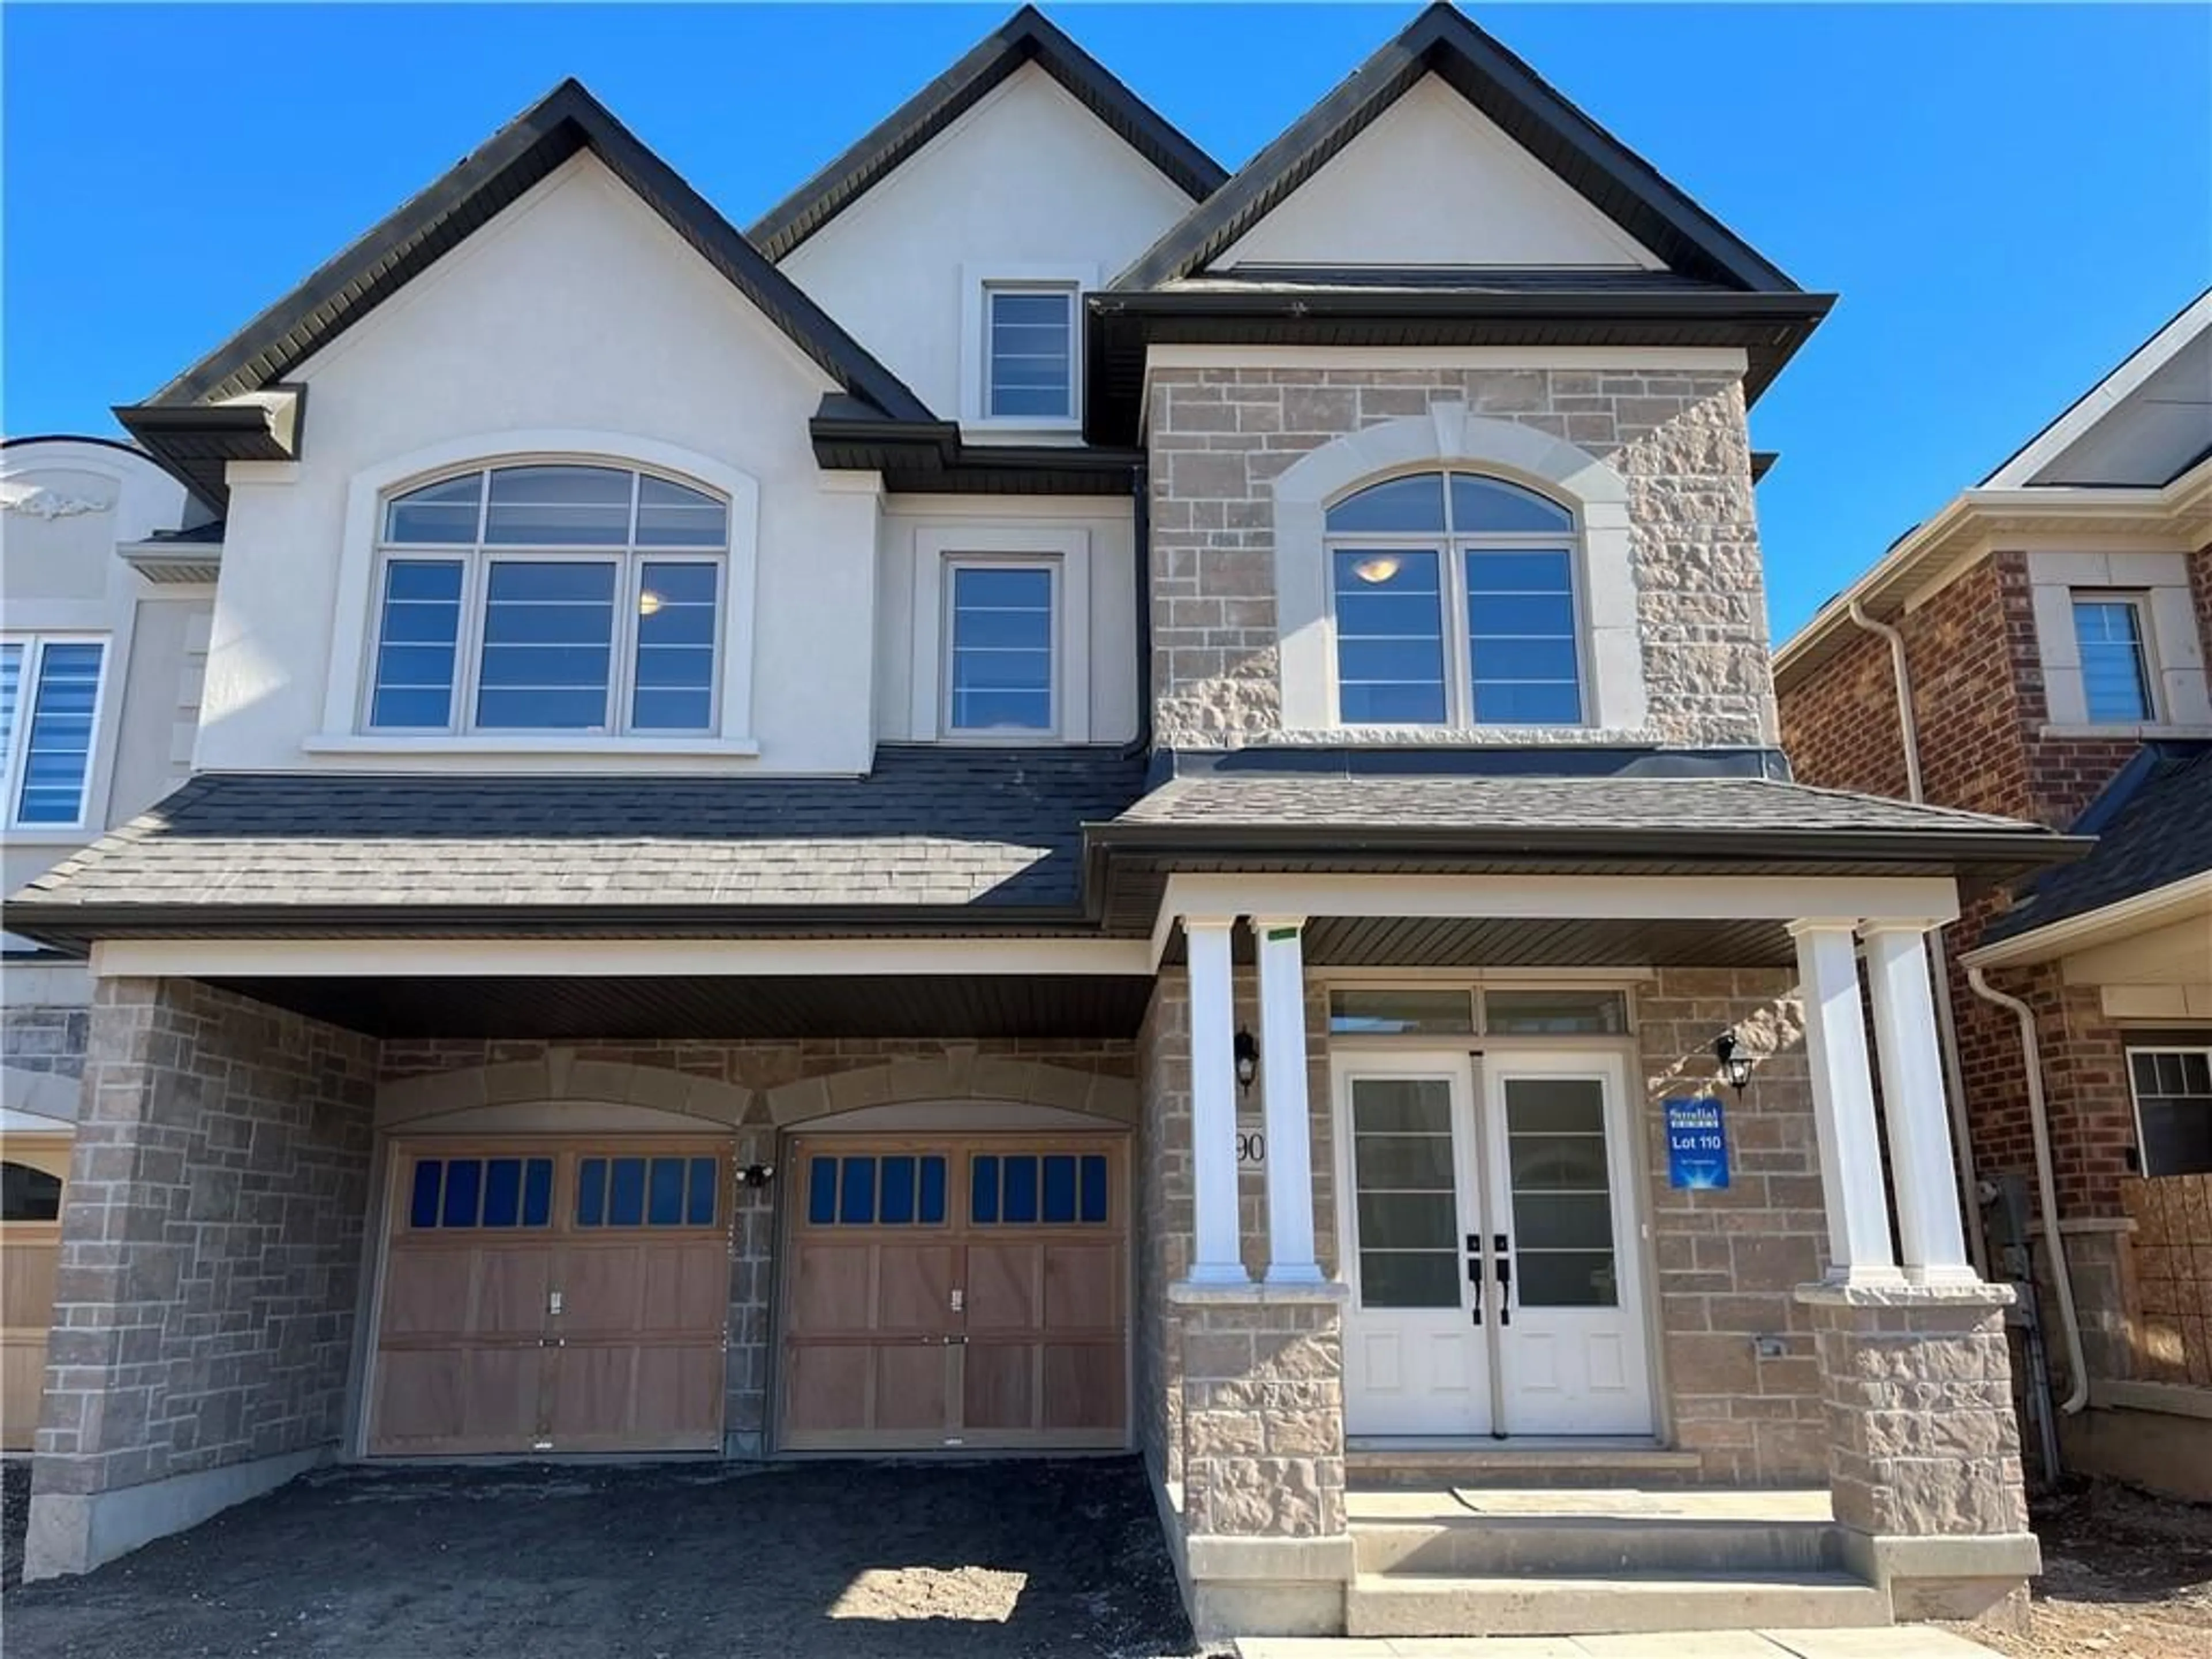 Home with brick exterior material for 3906 Leonardo St, Burlington Ontario L7M 0Z8